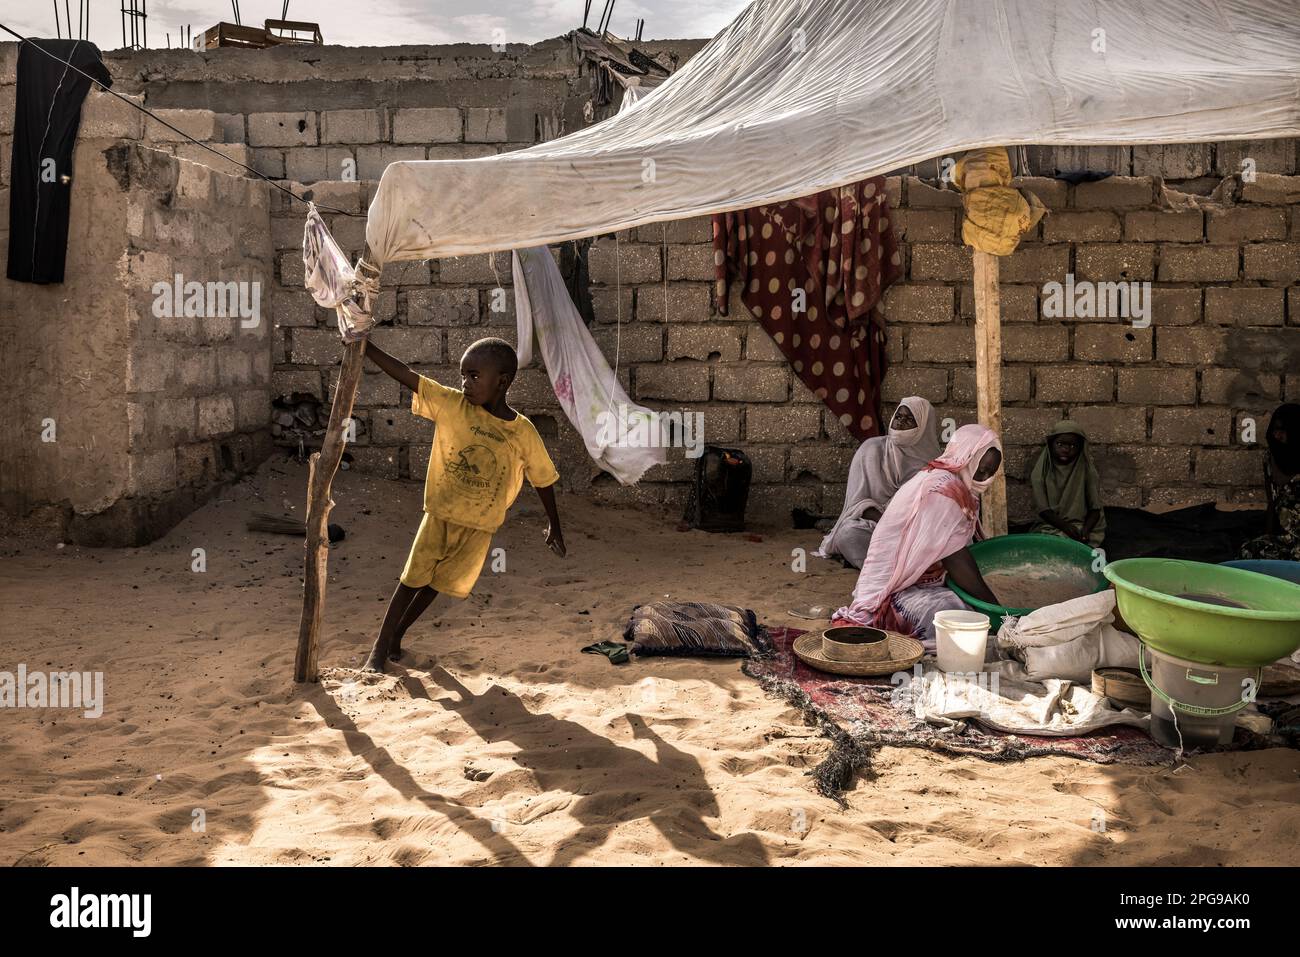 Les gens de tous les jours, traditionnels et simples, vivent dans les quartiers les plus pauvres de la capitale, Nouakshott, en Mauritanie. Banque D'Images